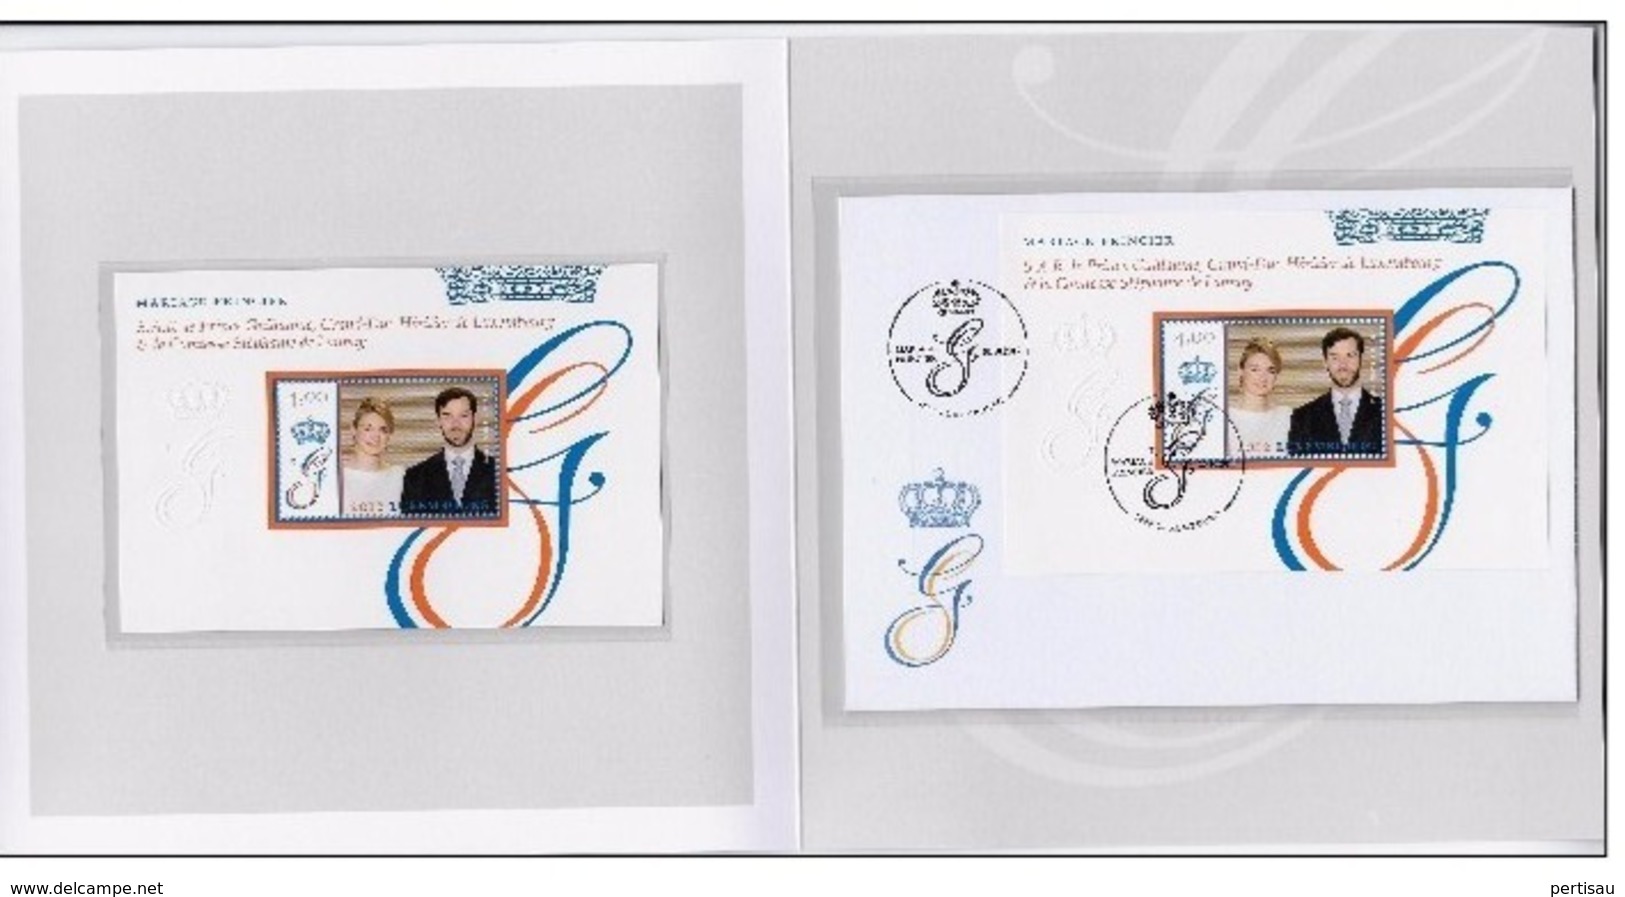 Map Luxemburg Mariage Princier Prince Guillaume-La Comtesse Stephanie De Lannoy - Commemoration Cards